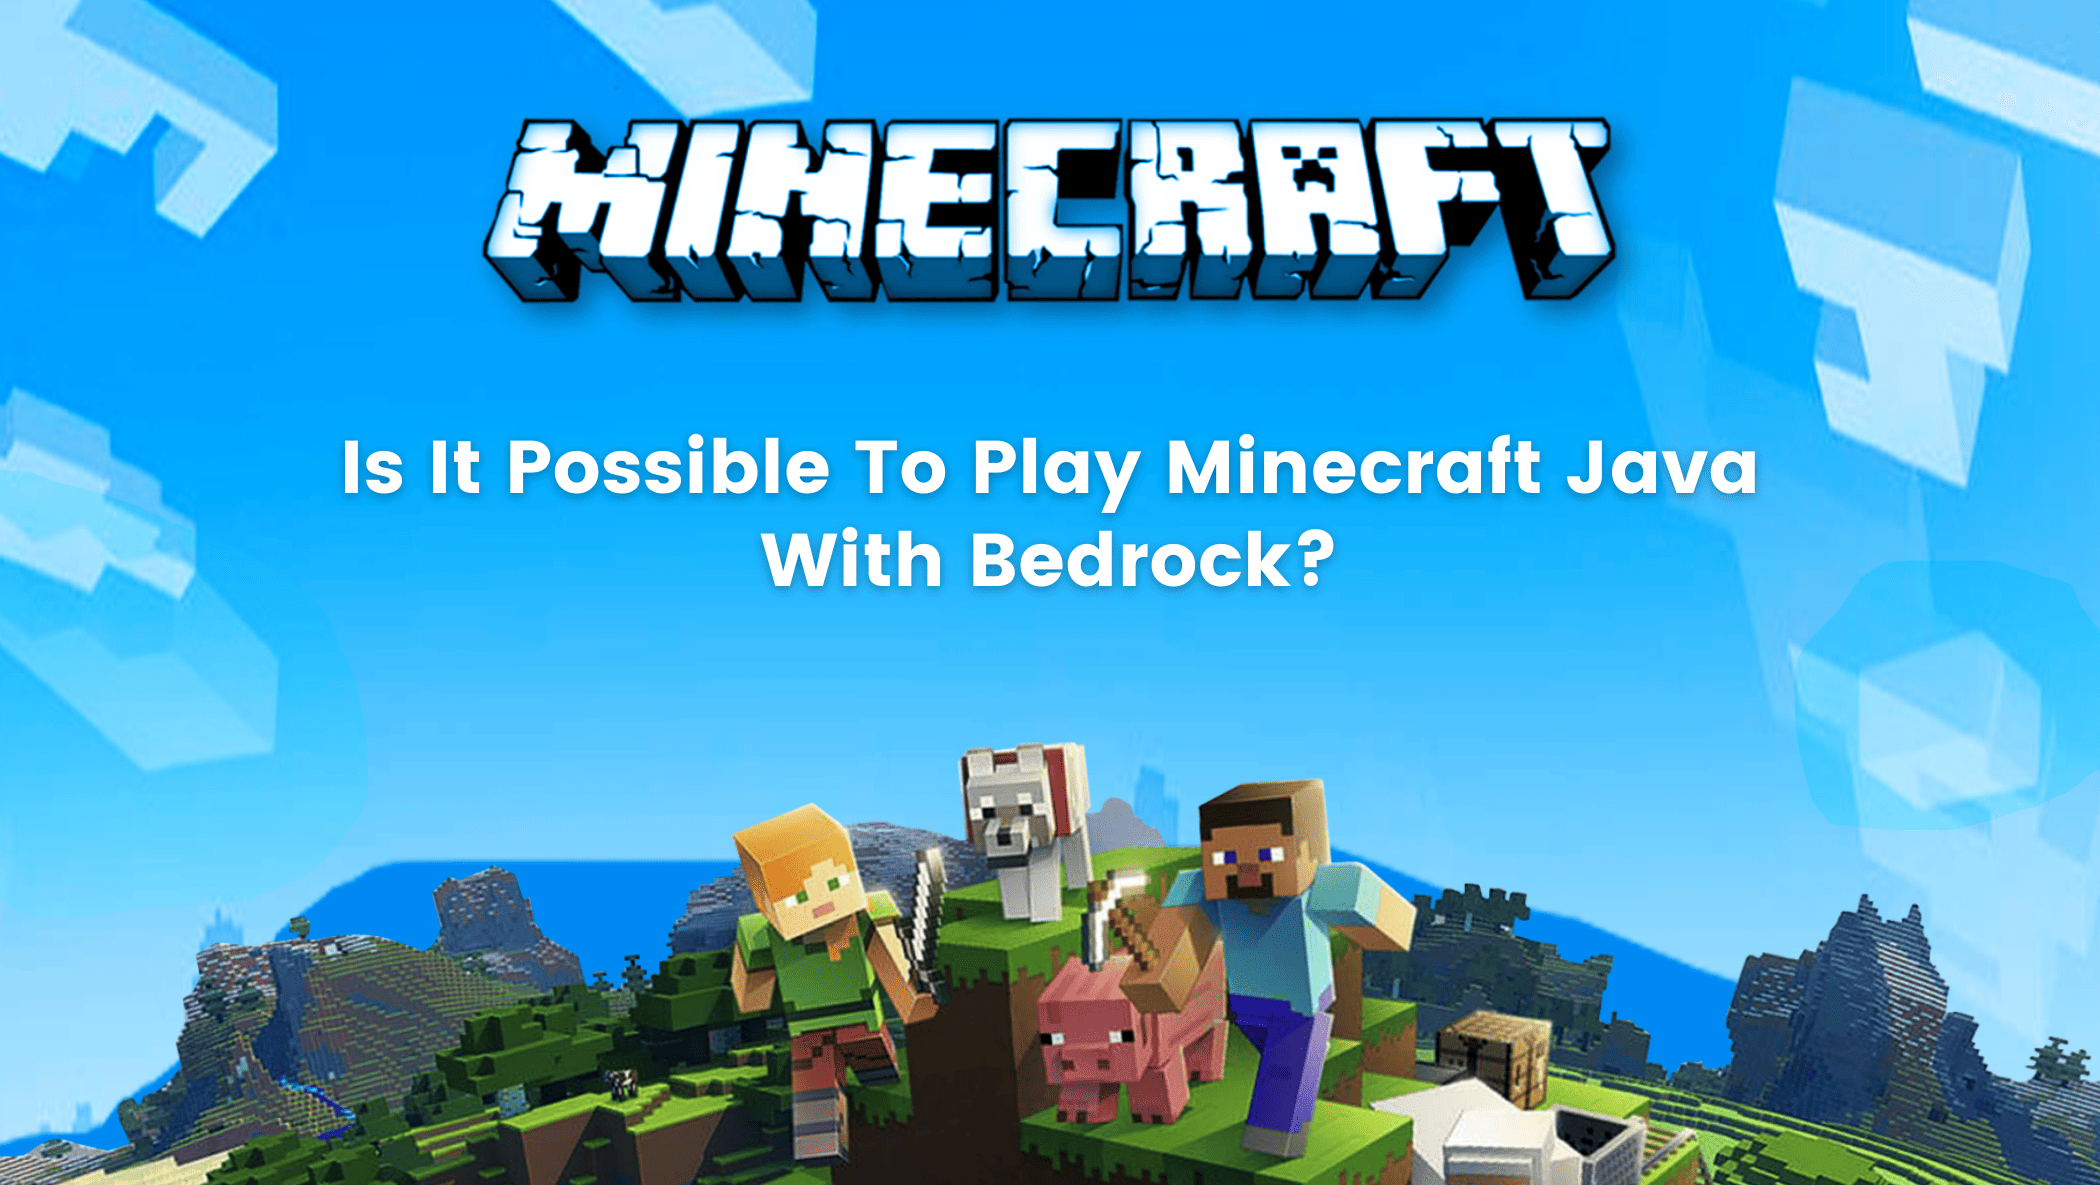 هل من الممكن لعب Minecraft Java مع الأساس